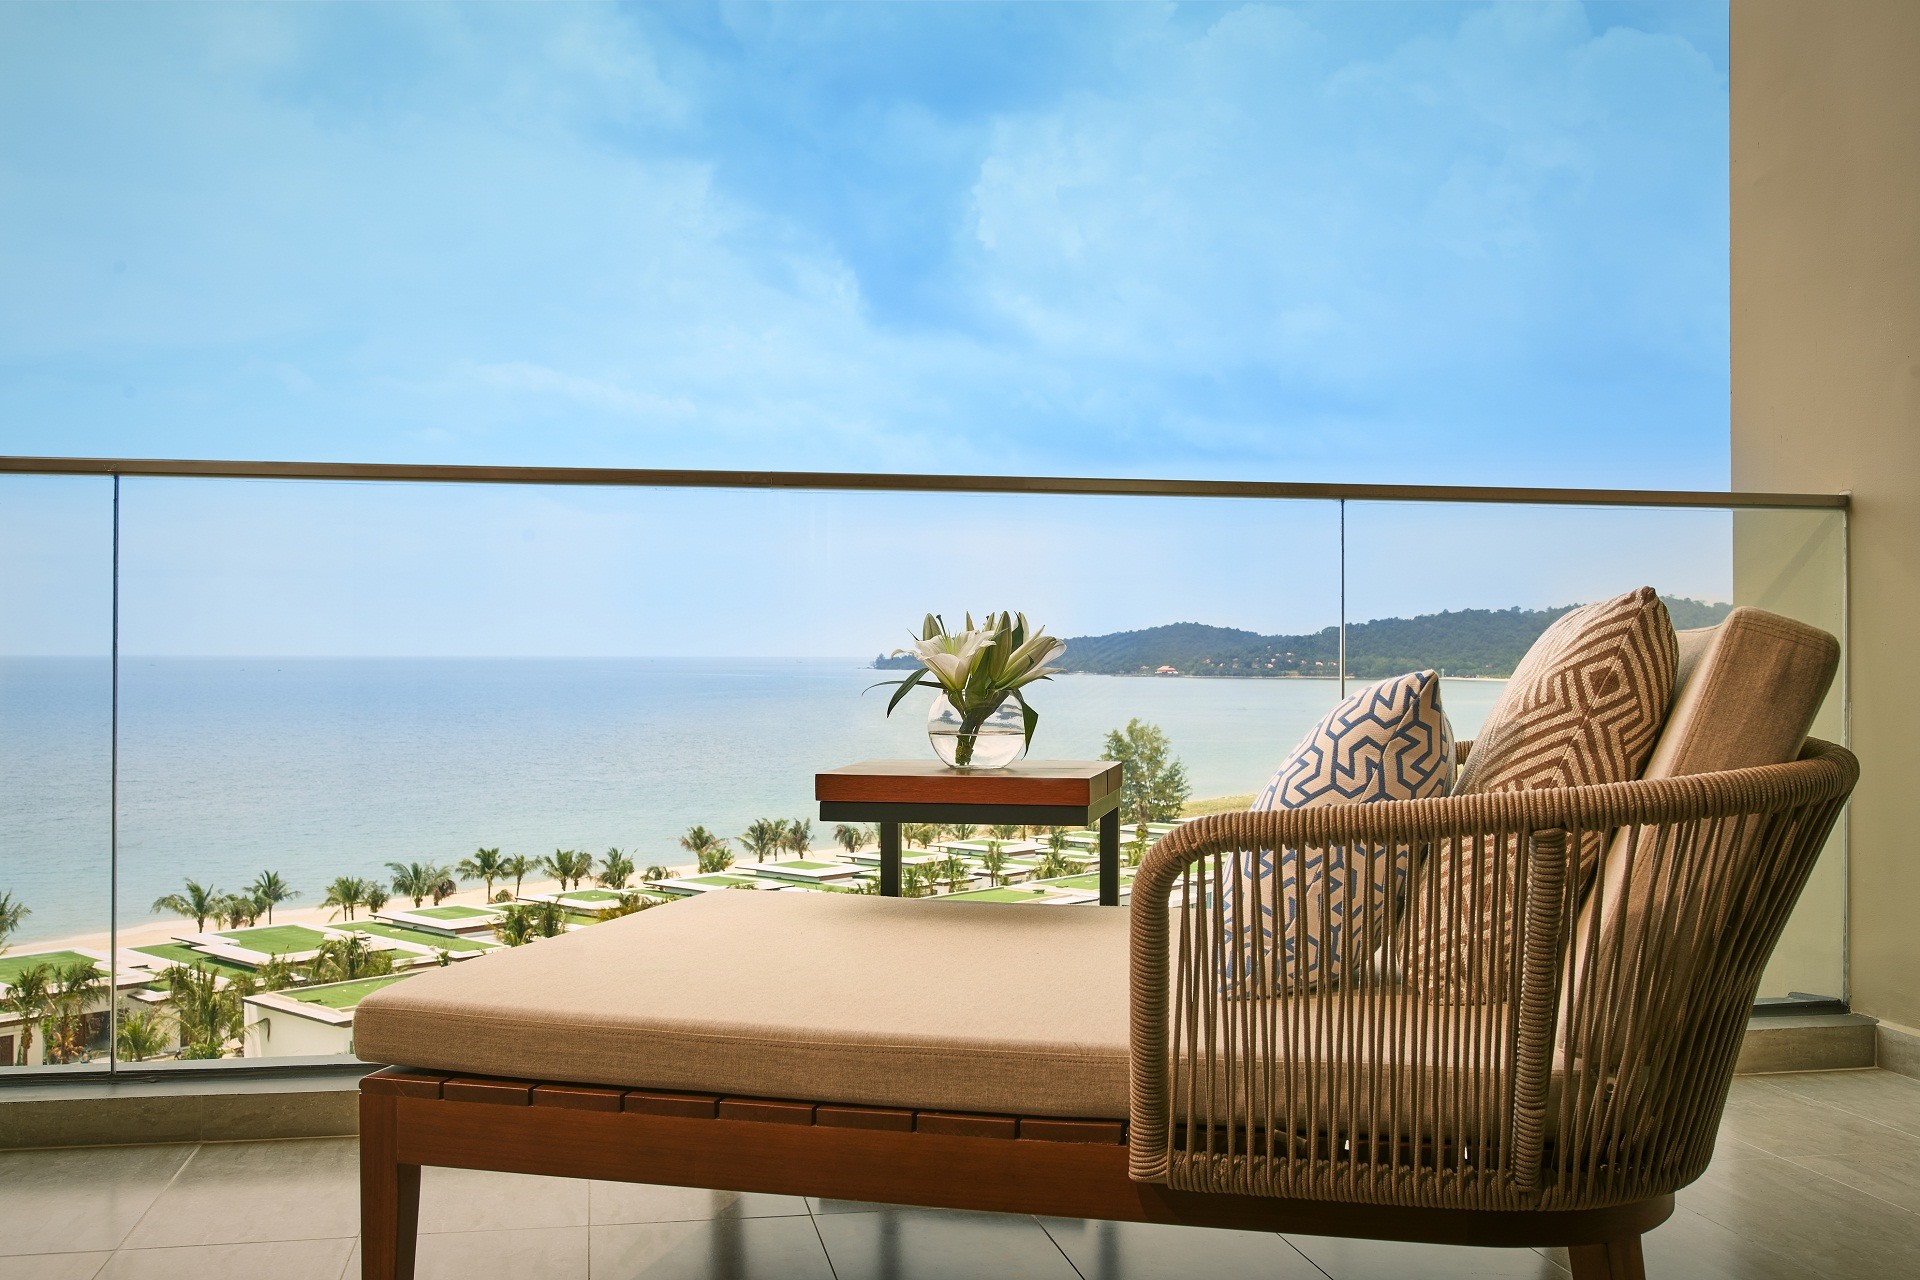 Từ ban công căn hộ khách sạn Mövenpick Resort Waverly Phú Quốc, du khách có thể phóng tầm mắt chiêm ngưỡng toàn bộ cảnh đẹp của bãi Ông Lang